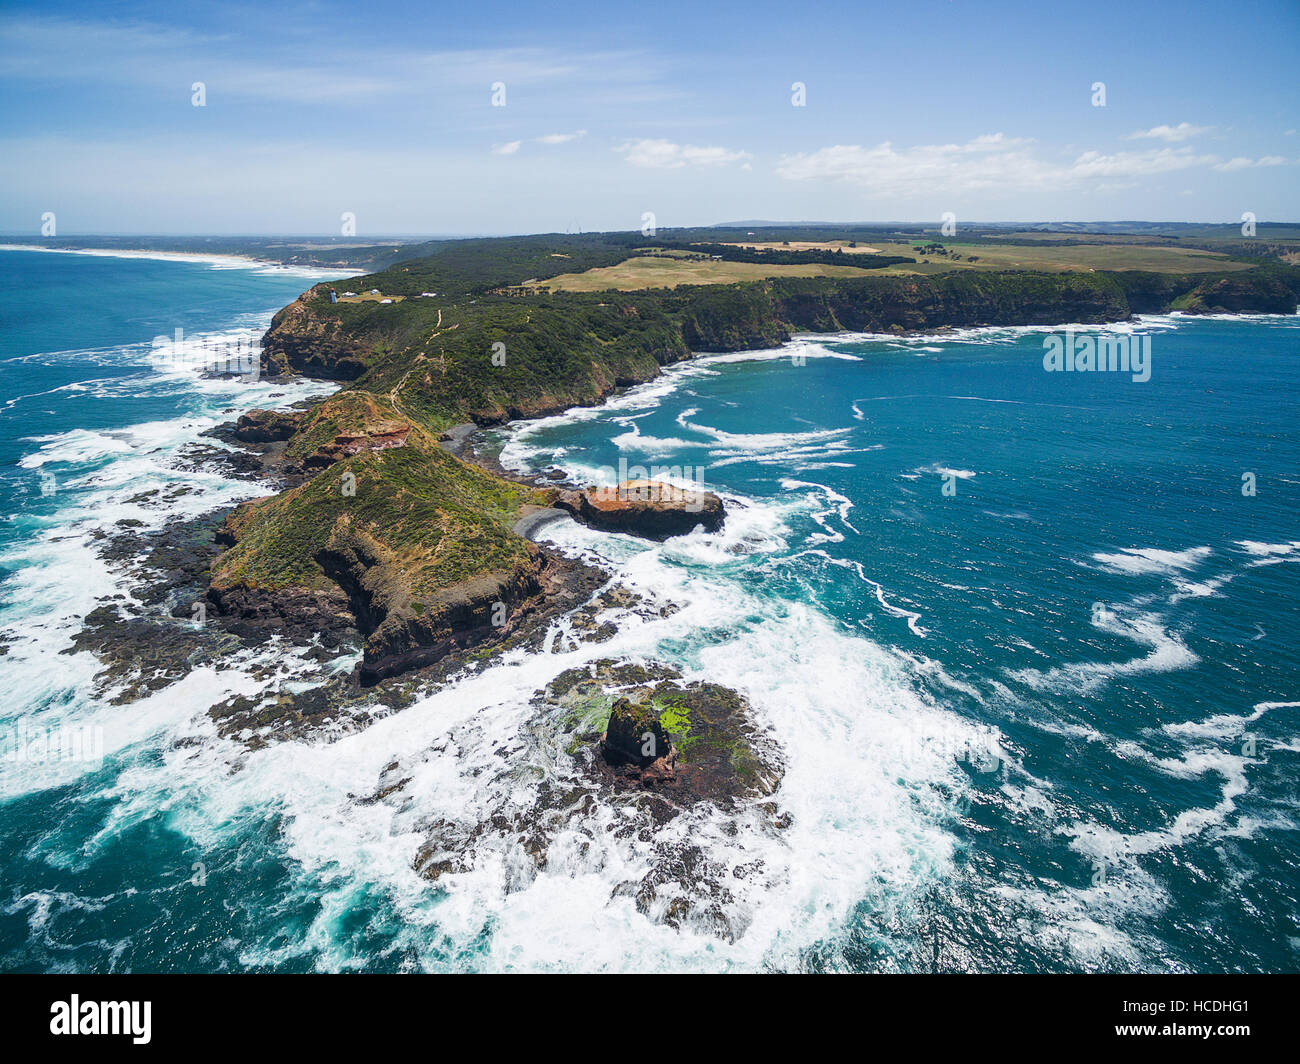 Vista aerea di Cape Schanck costa, faro, pulpito e Rock. Penisola di Mornington, Victoria, Australia Foto Stock